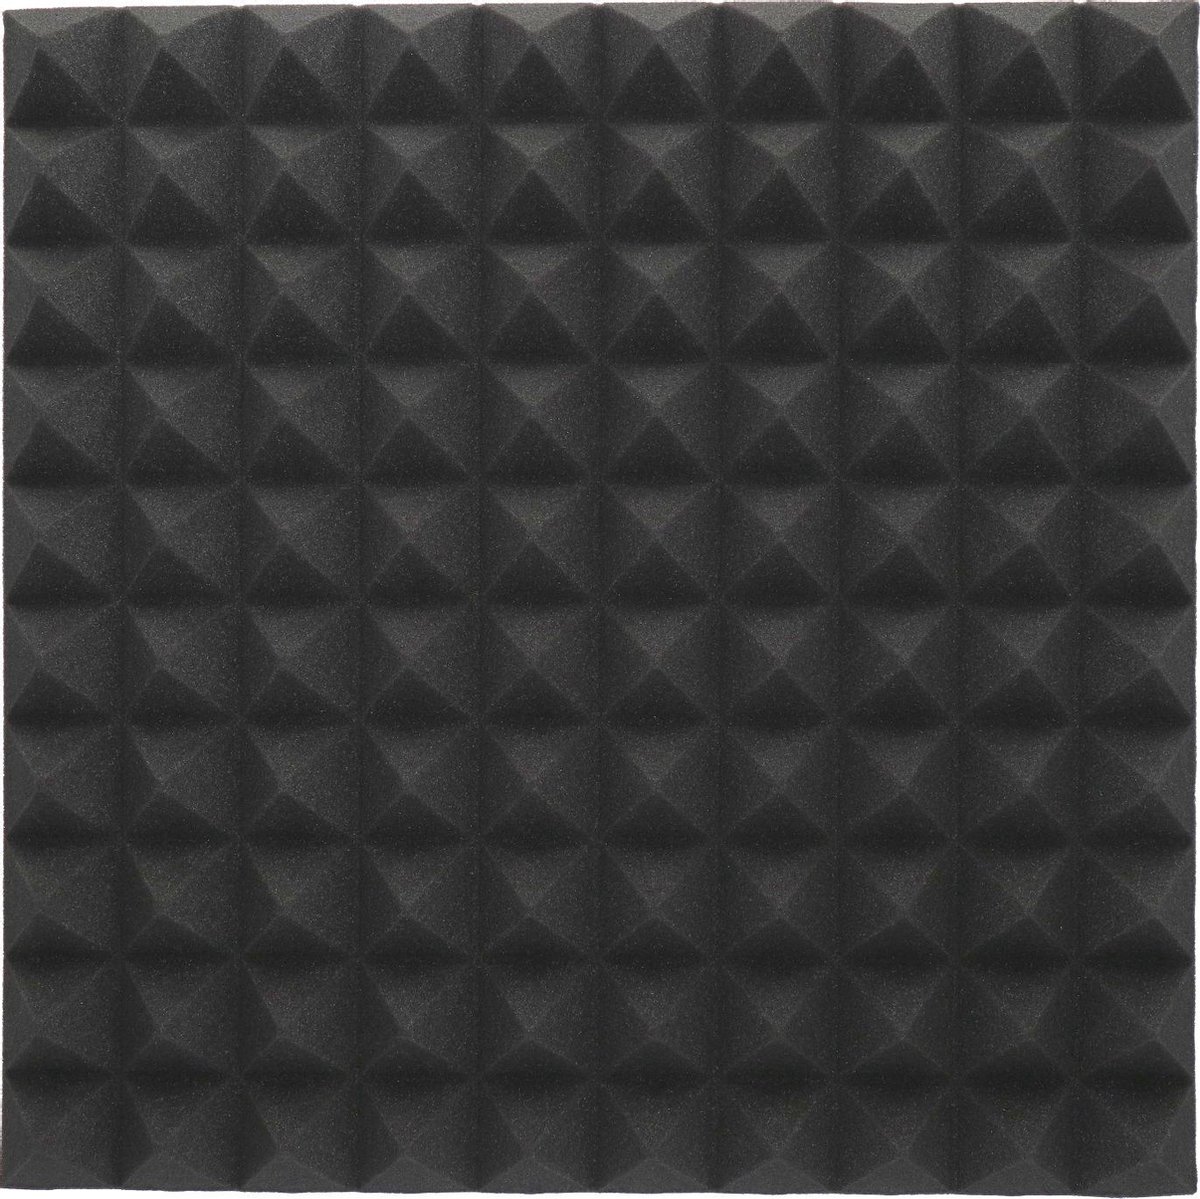 Foamplaat - Isolatieplaten - Akoestische panelen - 50x50cm - Zwart - Piramide - Geluidsisolatie - 50x50cm - interieur